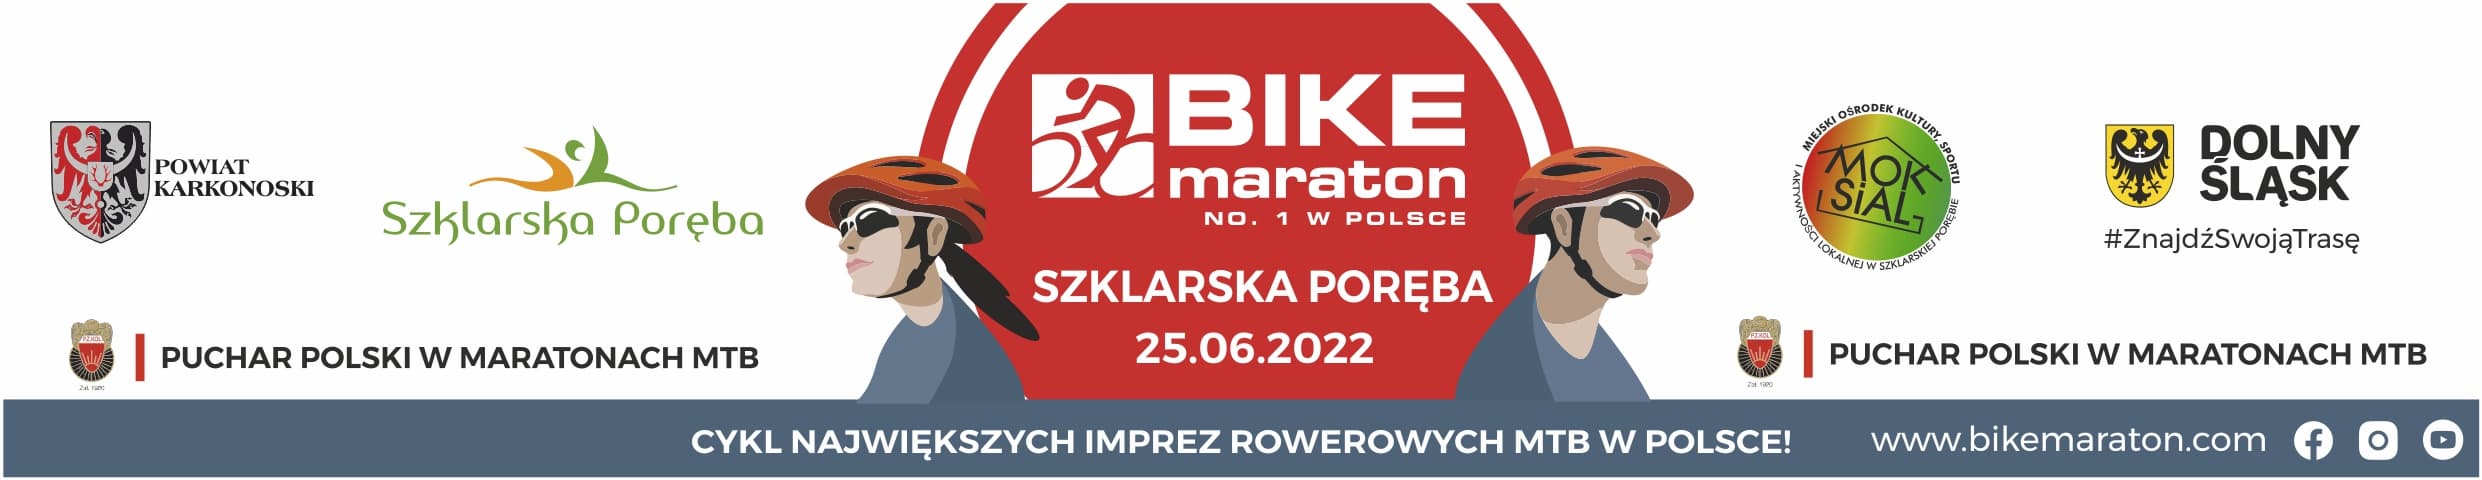 Bike Maraton Szklarska Poręba. Krzysztof Łukasik klasą dla siebie. W elicie kobiet najlepsza Klaudia Cichacka.